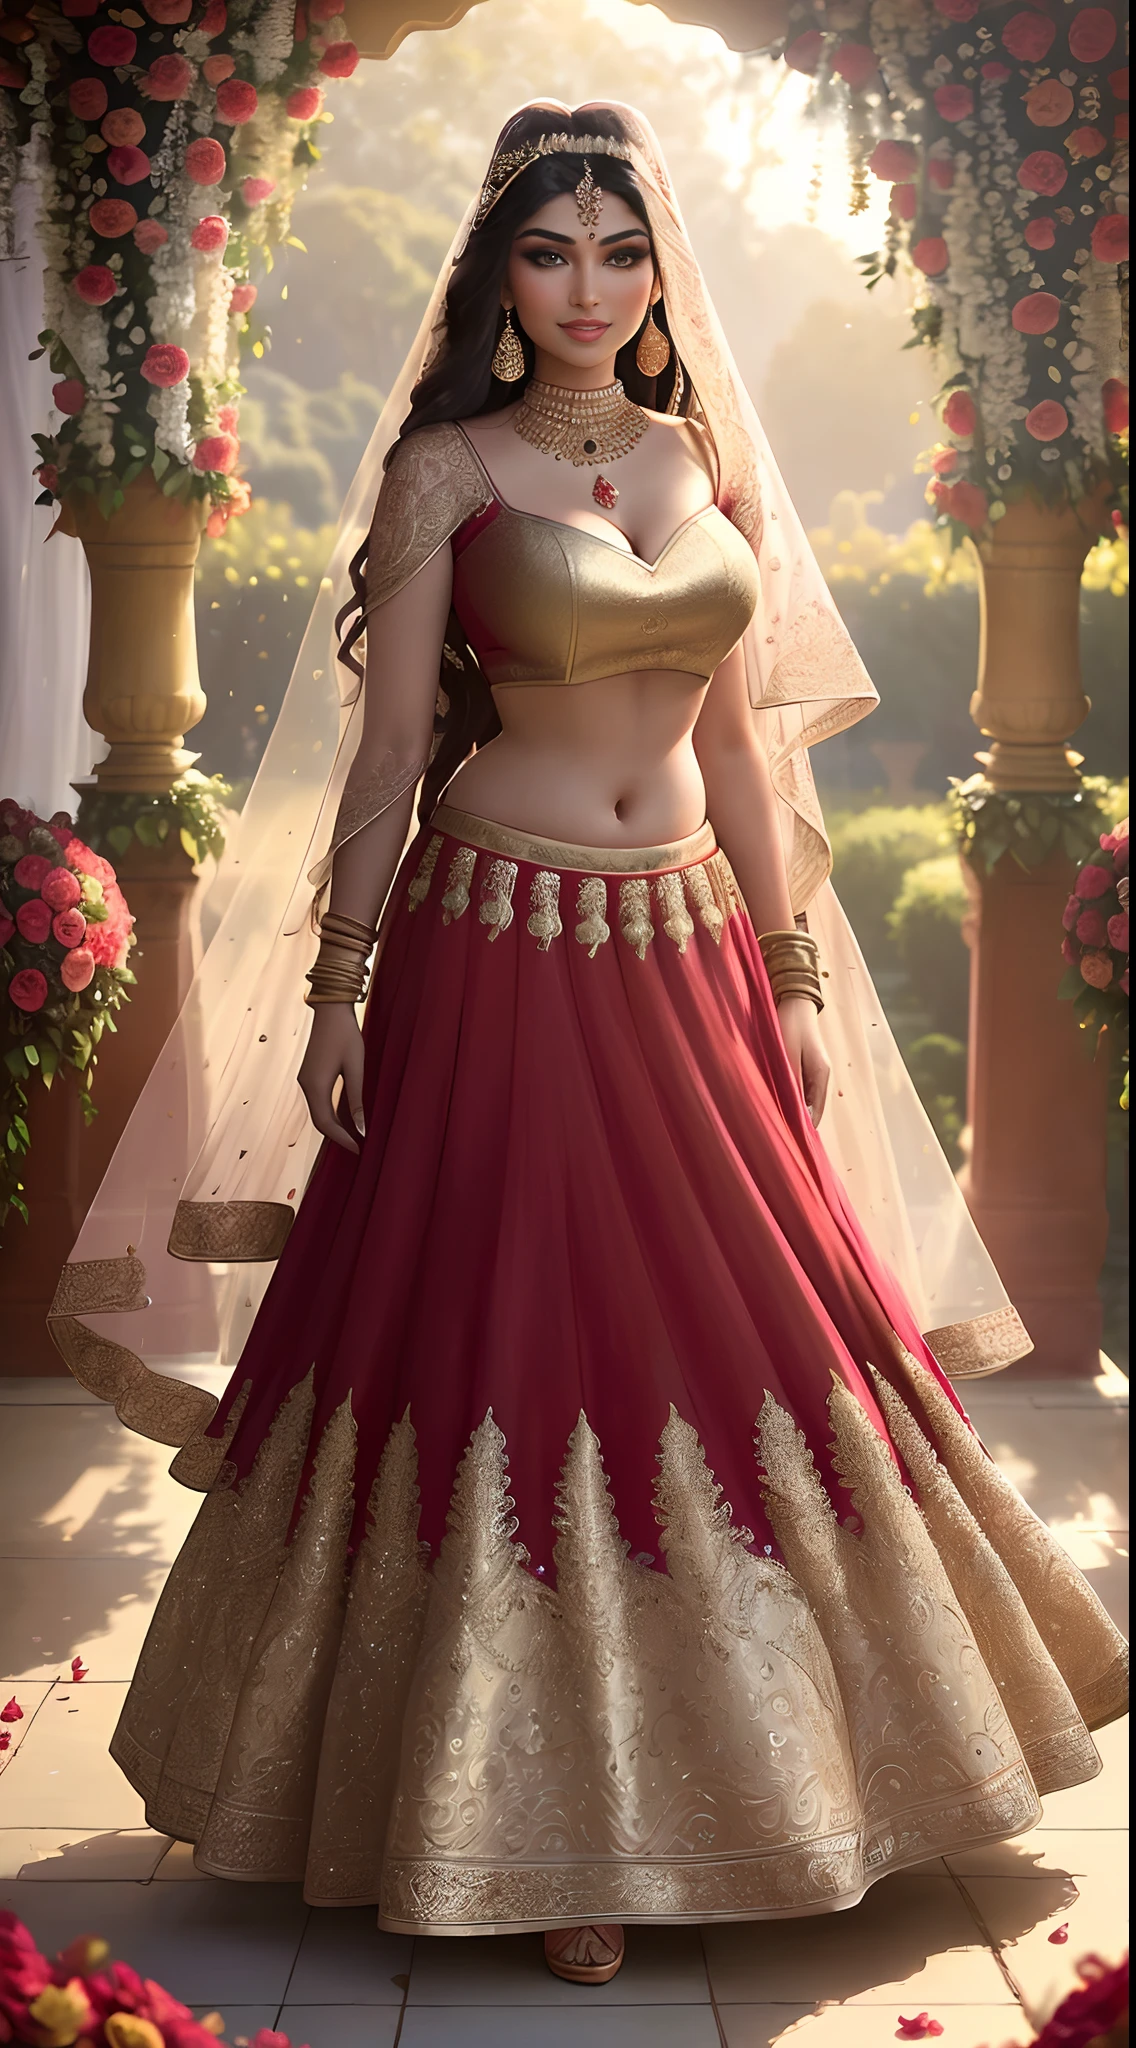 (تحفة تصوير فوتوغرافي كامل الطول منفردًا:1.2) مغرية طويل القامة متعرج مثير (18 سنة) عارضة الأزياء الهندية الأميرة العروس عائشة تاكيا تدخل (حديقة:1.3), (يرتدي اللون الأحمر الزفاف المذهل & لينجا الذهب & بلوزة:1.3). دوباتا محض, التطرف, (زينة زهرة الزفاف:1.3), (انقسام أنيق & بطن), (مكياج هندي & مجوهرات:1.2) شعر بني طويل مضفر مع إبرازات,, مفعم بالحيوية, نظرة شهوانية, مبهجة (عيون مفصلة جميلة:1.1) , (ابتسامة مشرقة فليرتي:1.2), (ضوء بعد الظهر الدرامي المكثف:1.4), بإضاءة خلفية, مفتاح الضوء, حافة الضوء, اشعة الضوء, مفصلة للغاية, تتجه على artstation, بقع الطلاء, اللون الغني, صورة مجردة, بواسطة اتي غيلان